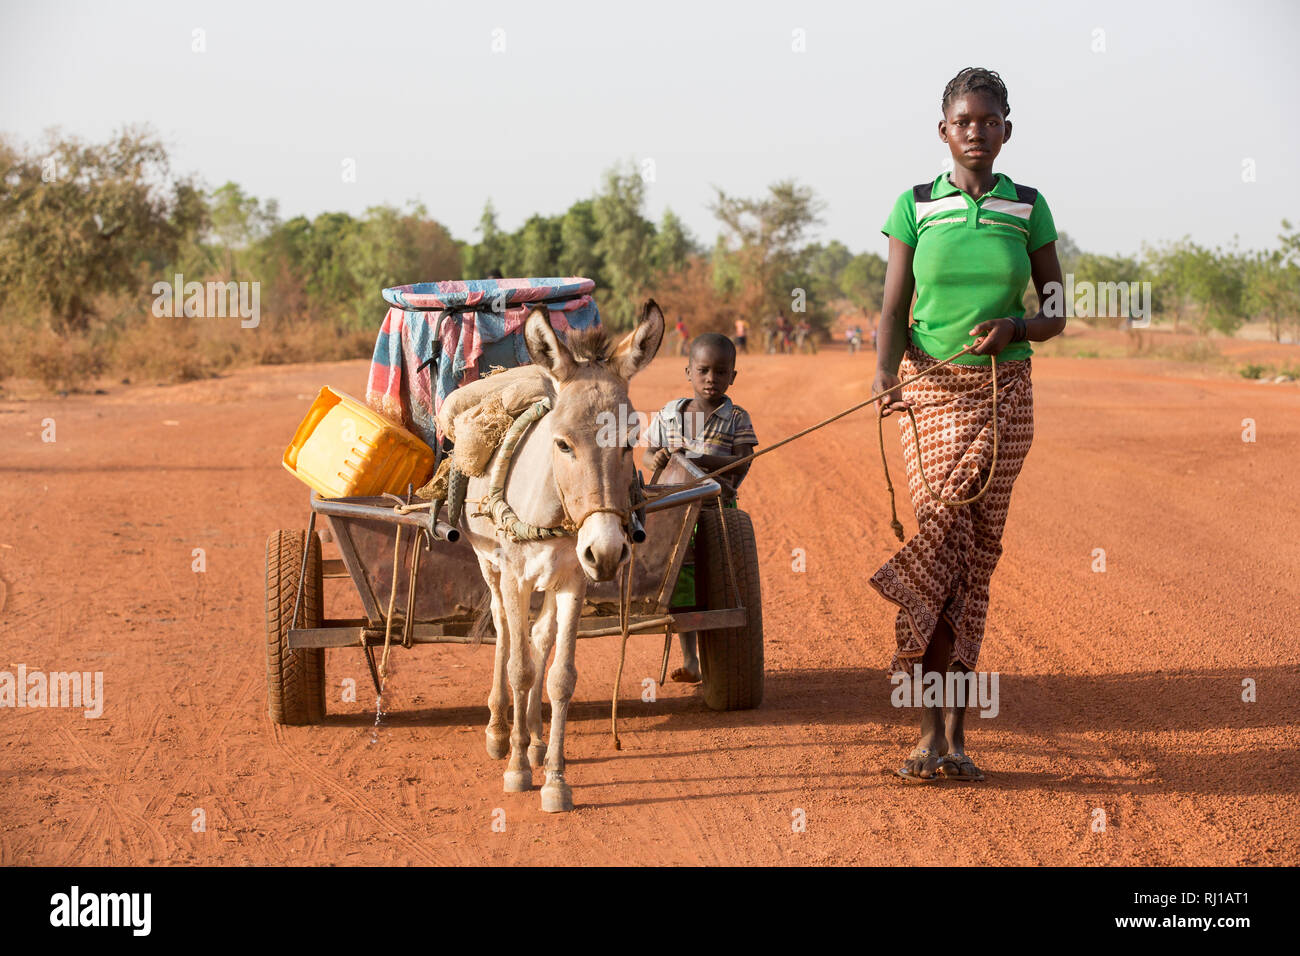 Samba Dorf, yako Provinz, Burkina Faso: Abzetta Sondo, 19, kehrt mit vollen Wasserbehälter aus dem gut für Ihr Haus. Stockfoto